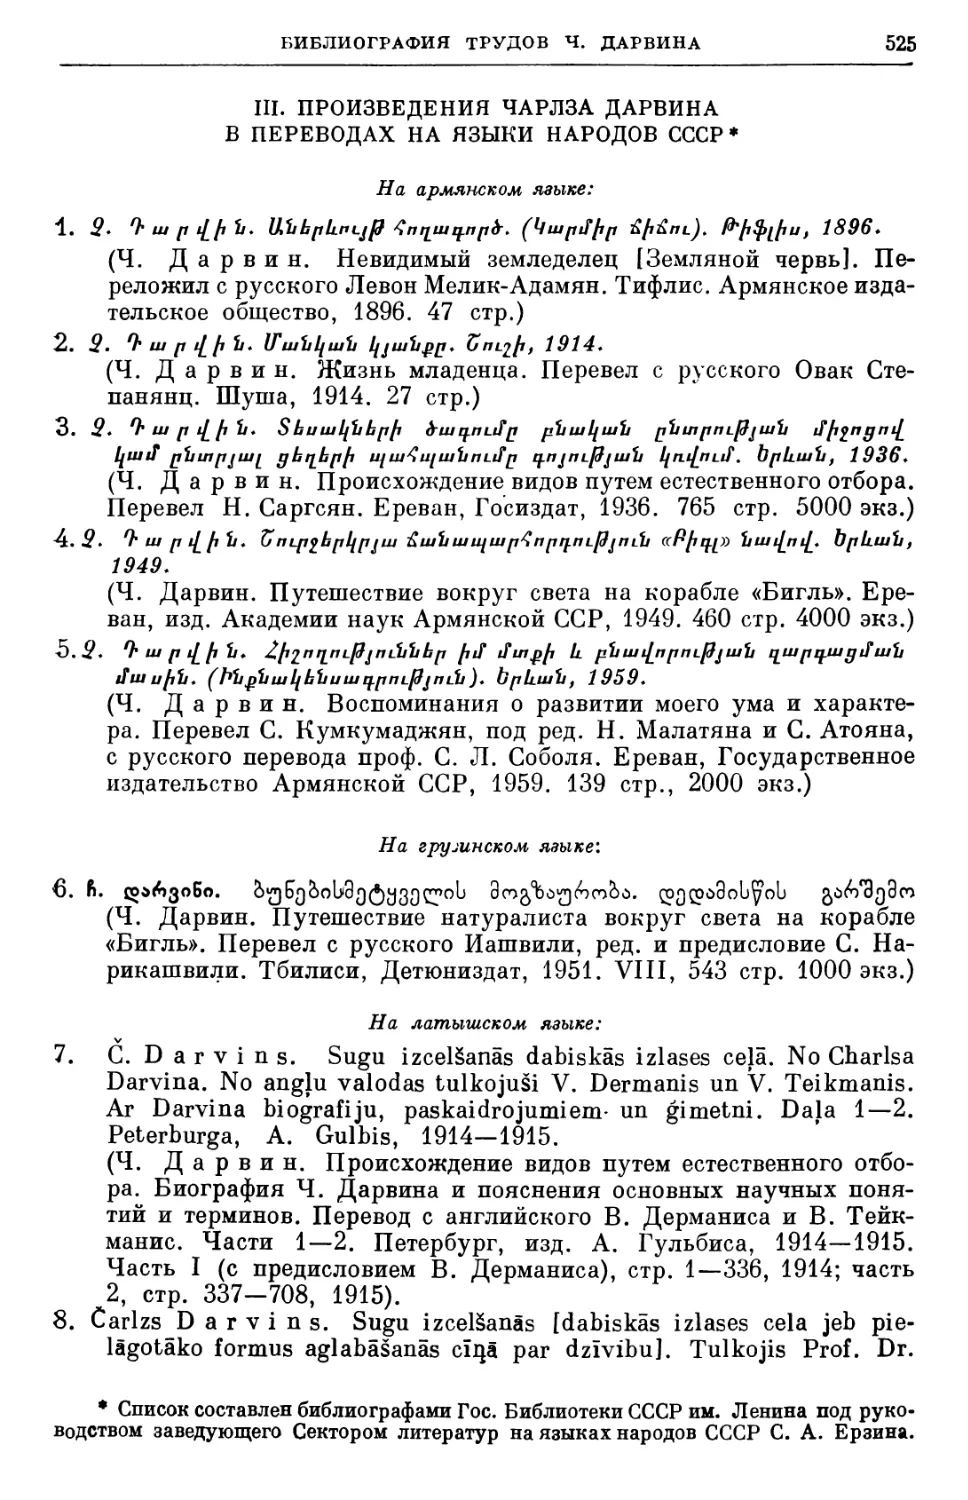 III. Произведения Чарлза Дарвина в переводах на языки народов СССР